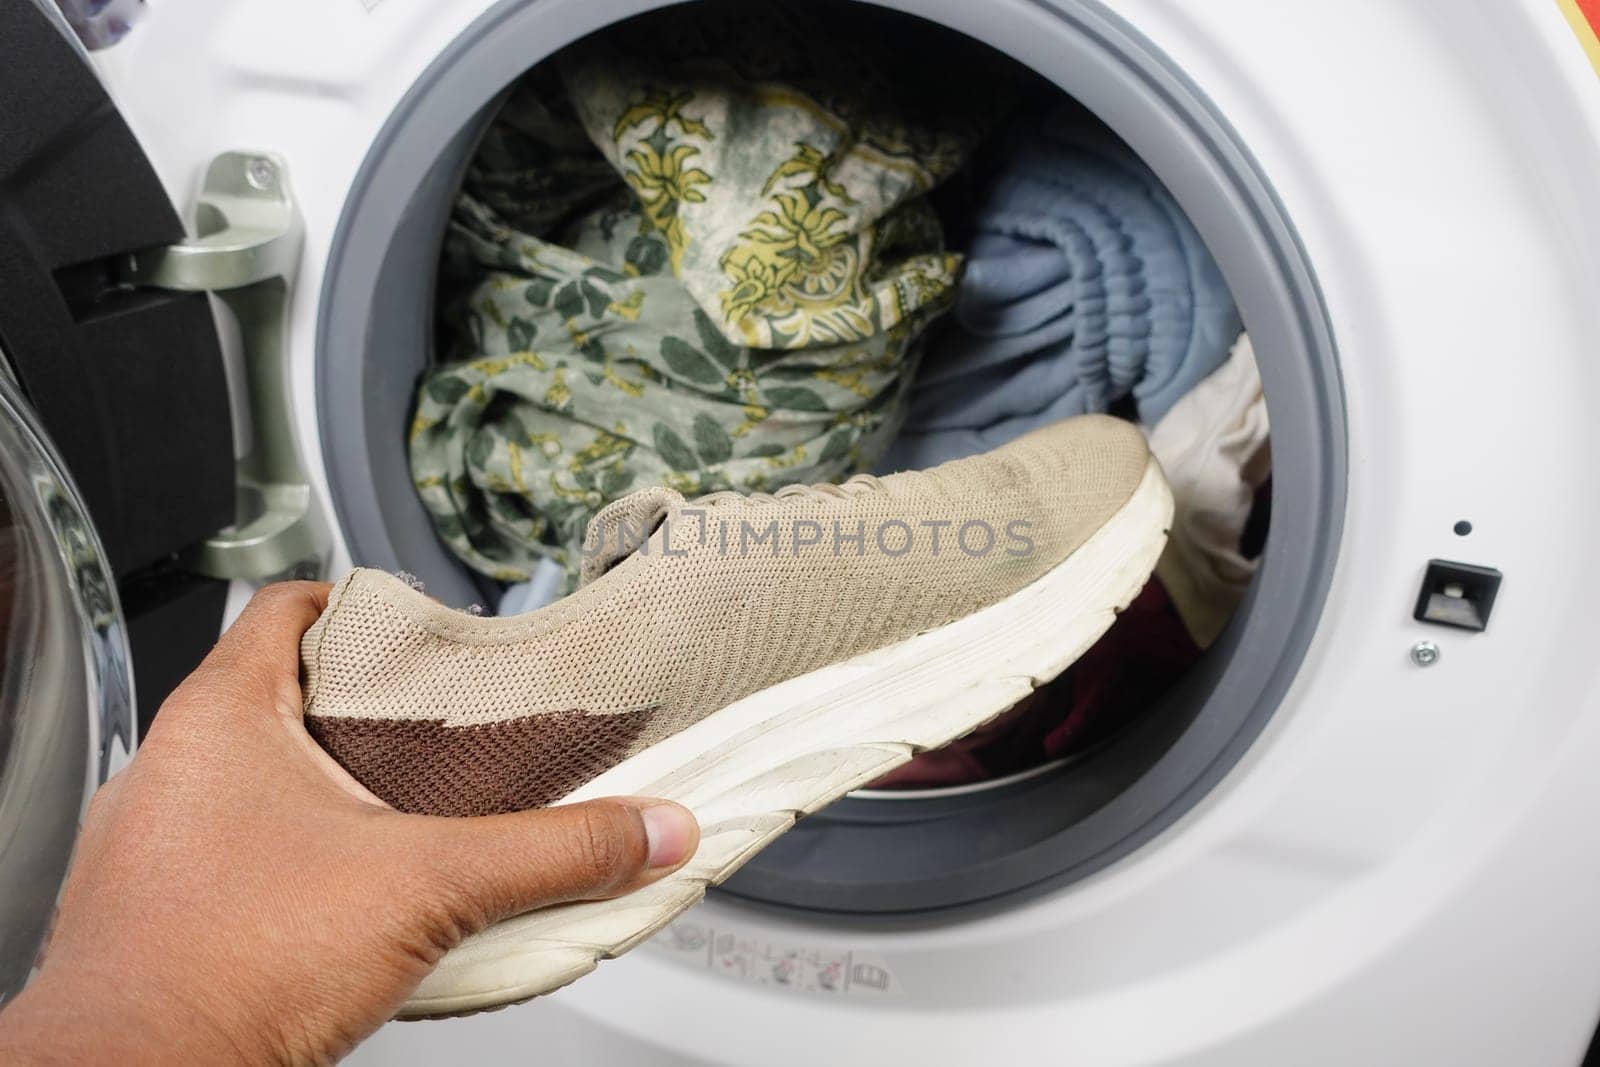 putting dirty shoe in a washing machine. by towfiq007